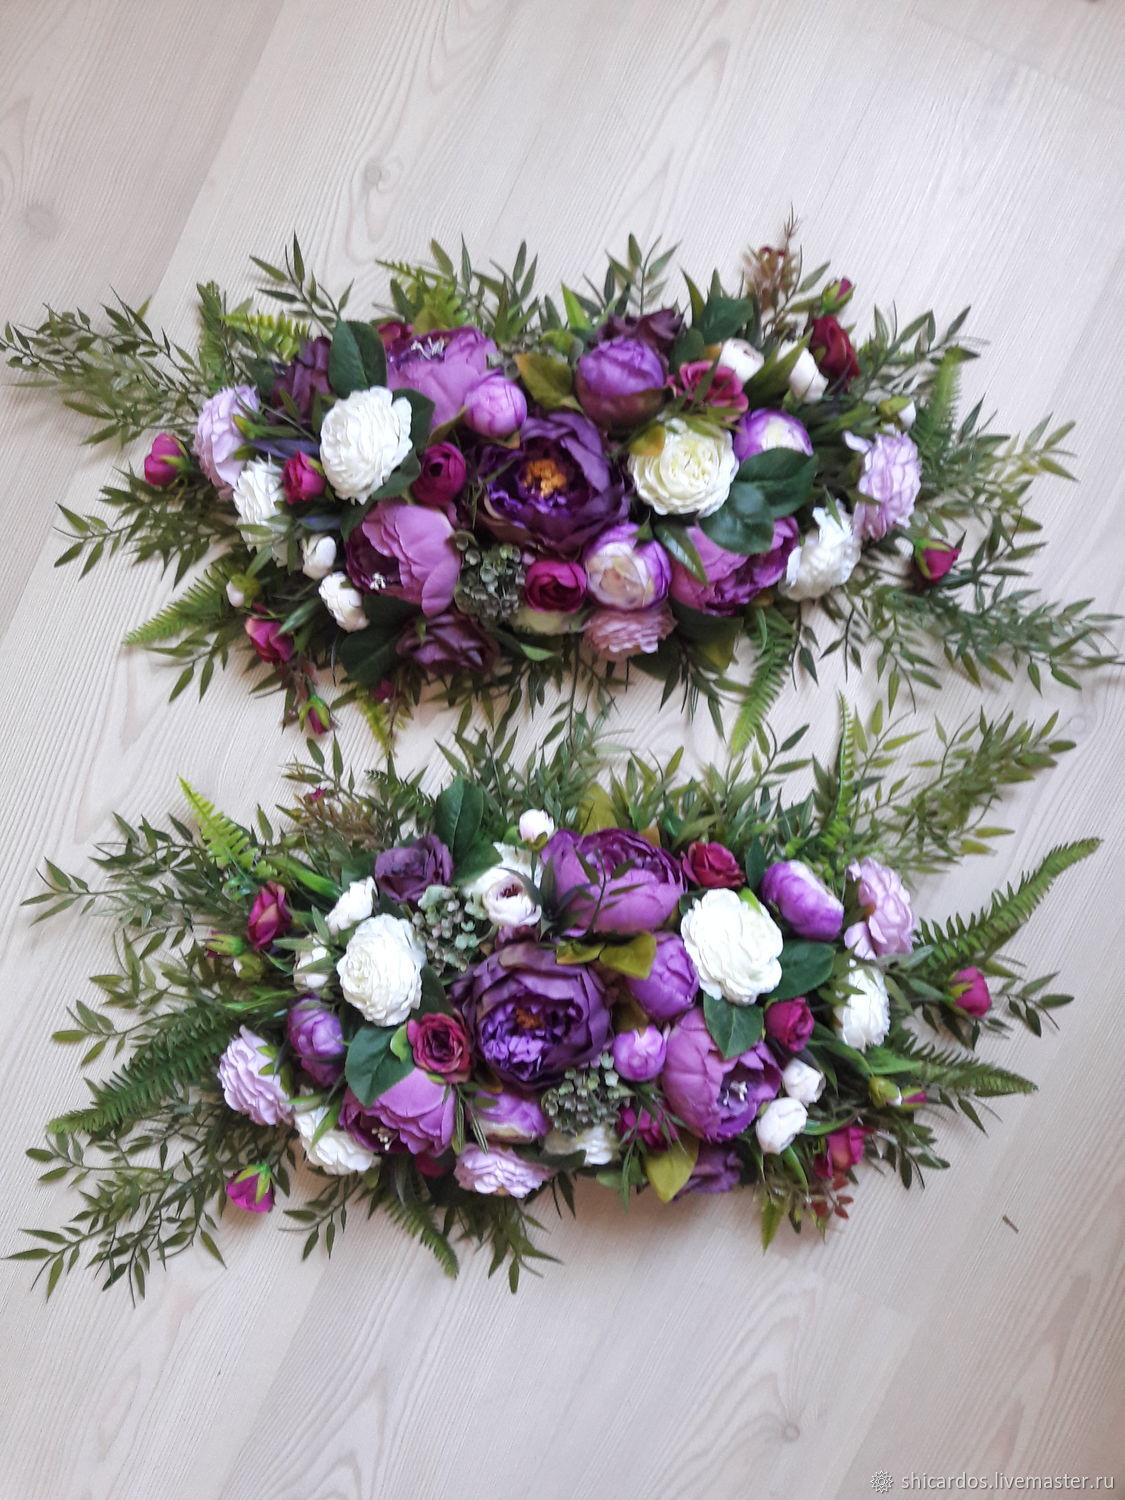 Купить искусственные цветы на свадебную арку флора маркет на каширке